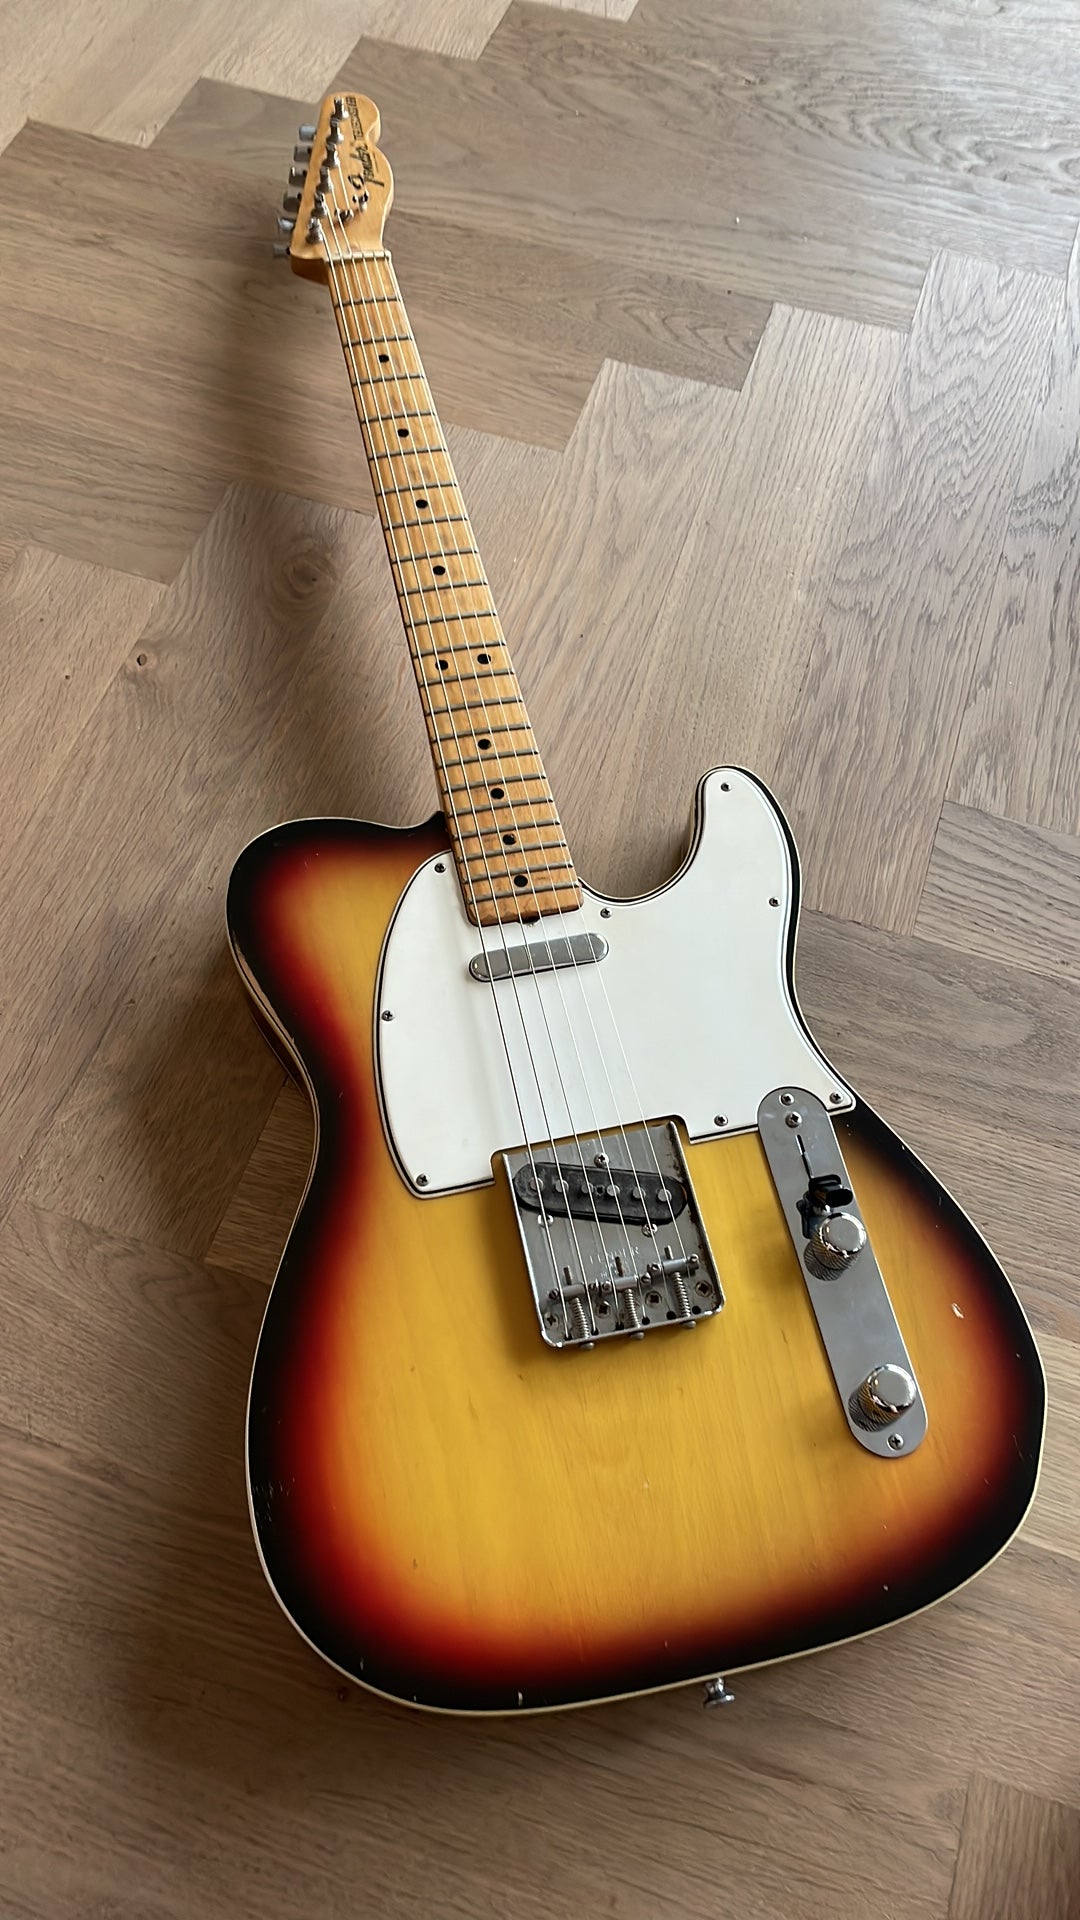 1972/73 Fender telecaster custom